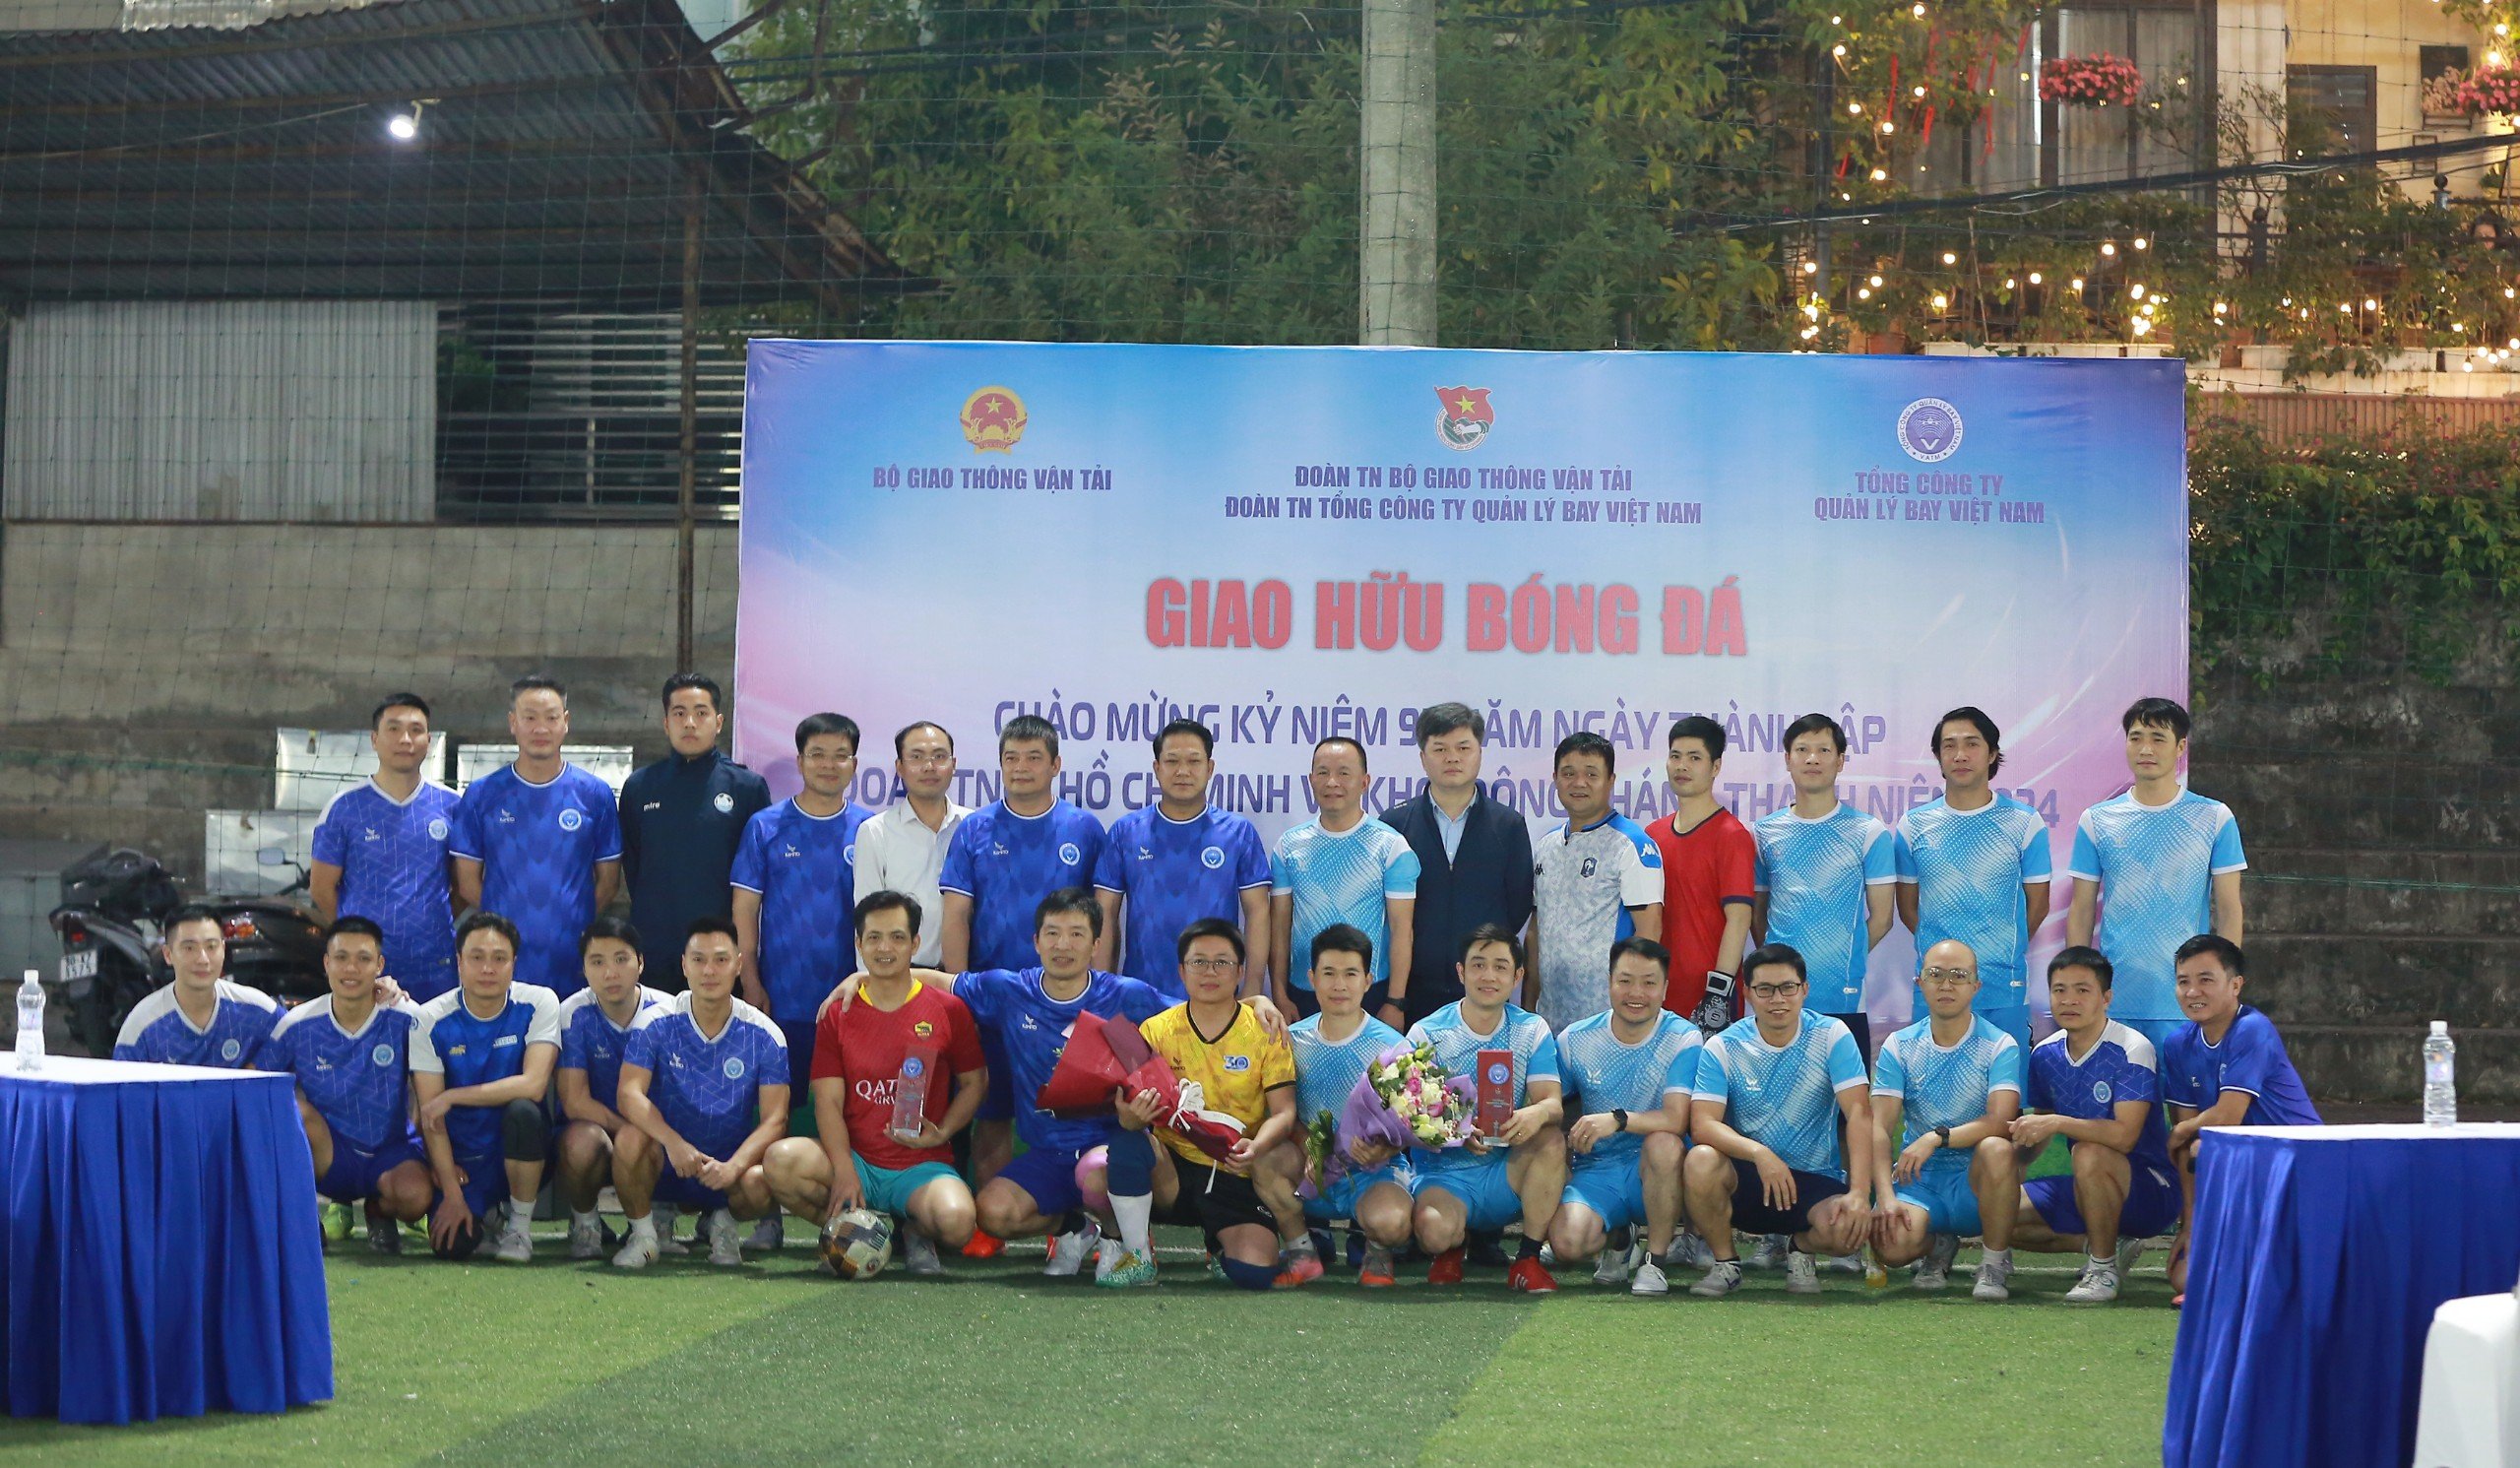 Giao hữu bóng đá Chào mừng kỷ niệm 93 năm Ngày thành lập Đoàn TNCS Hồ Chí Minh (26/3/1931 - 26/3/2024) và khởi động Tháng Thanh niên năm 2024